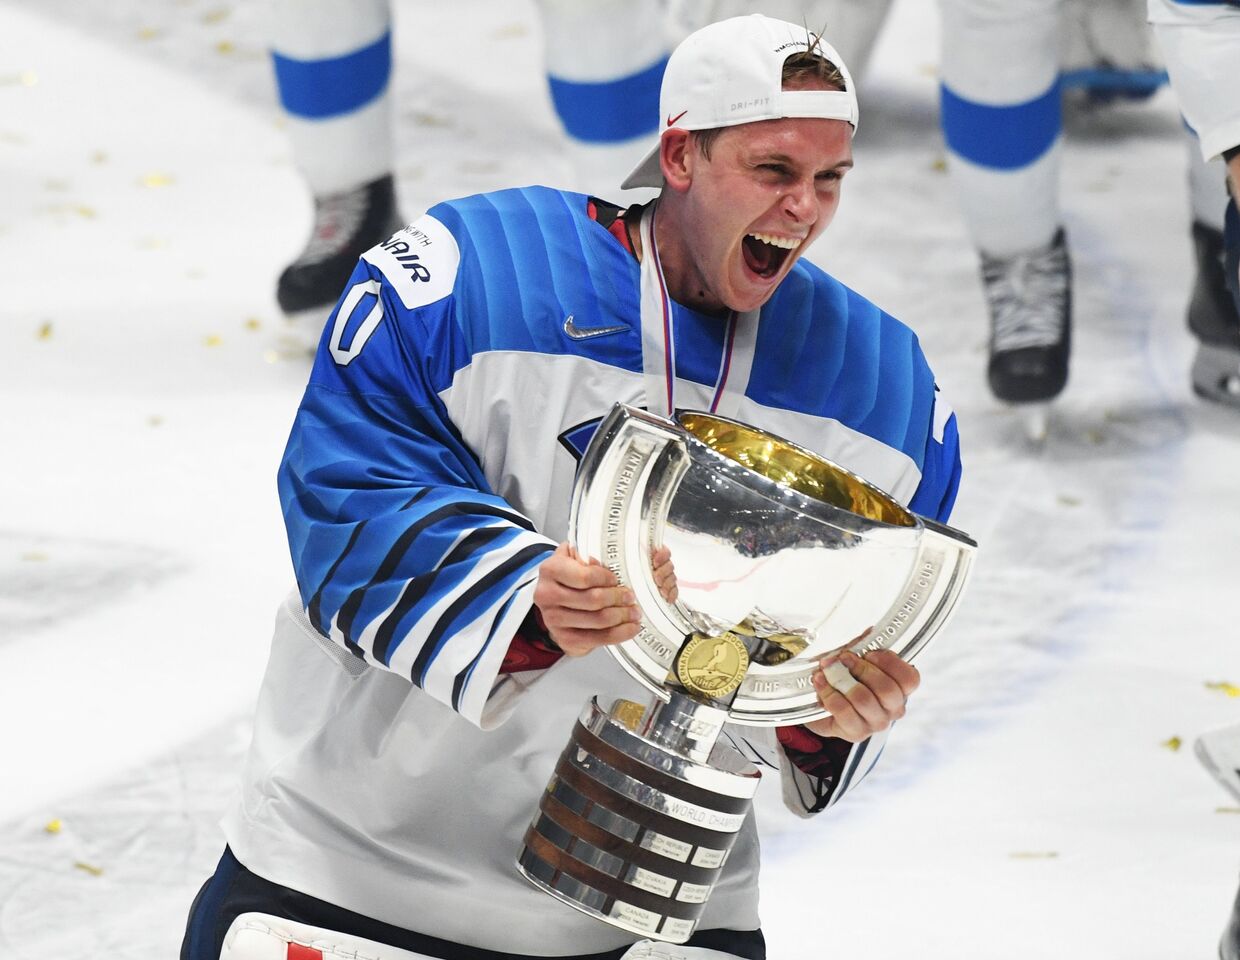 Вратарь сборной Финляндии Кевин Ланкинен на церемонии награждения после победы в финальном матче чемпионата мира по хоккею между сборными командами Канады и Финляндии